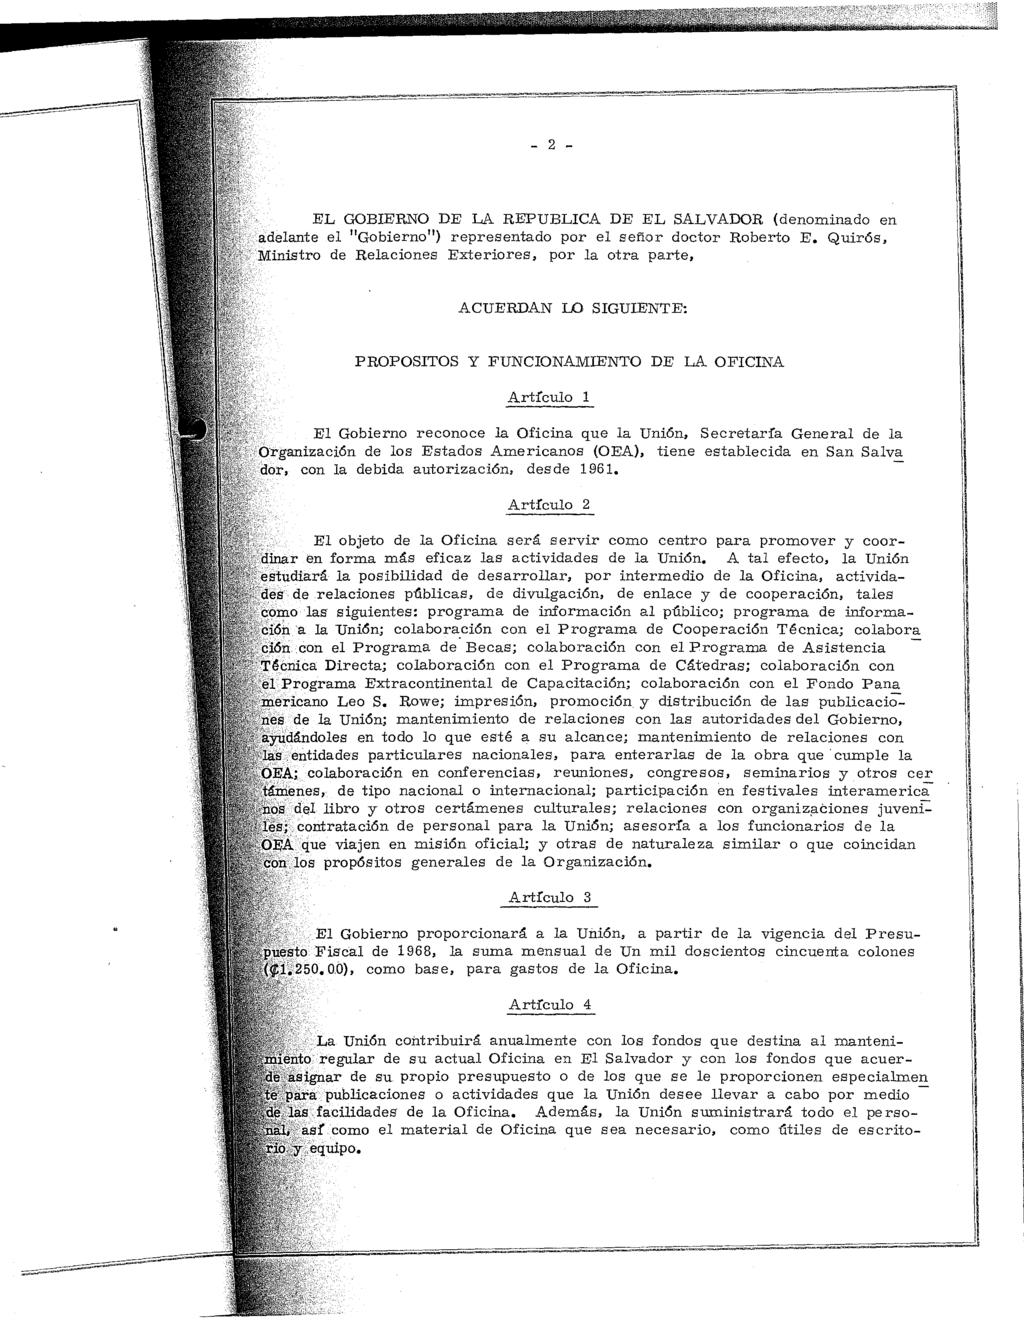 EL GOBIERNO DE LA REPUBLICA DE EL SALVADOR (denominado en adelante el "Gobierno ") representado por el señor doctor Roberto E.